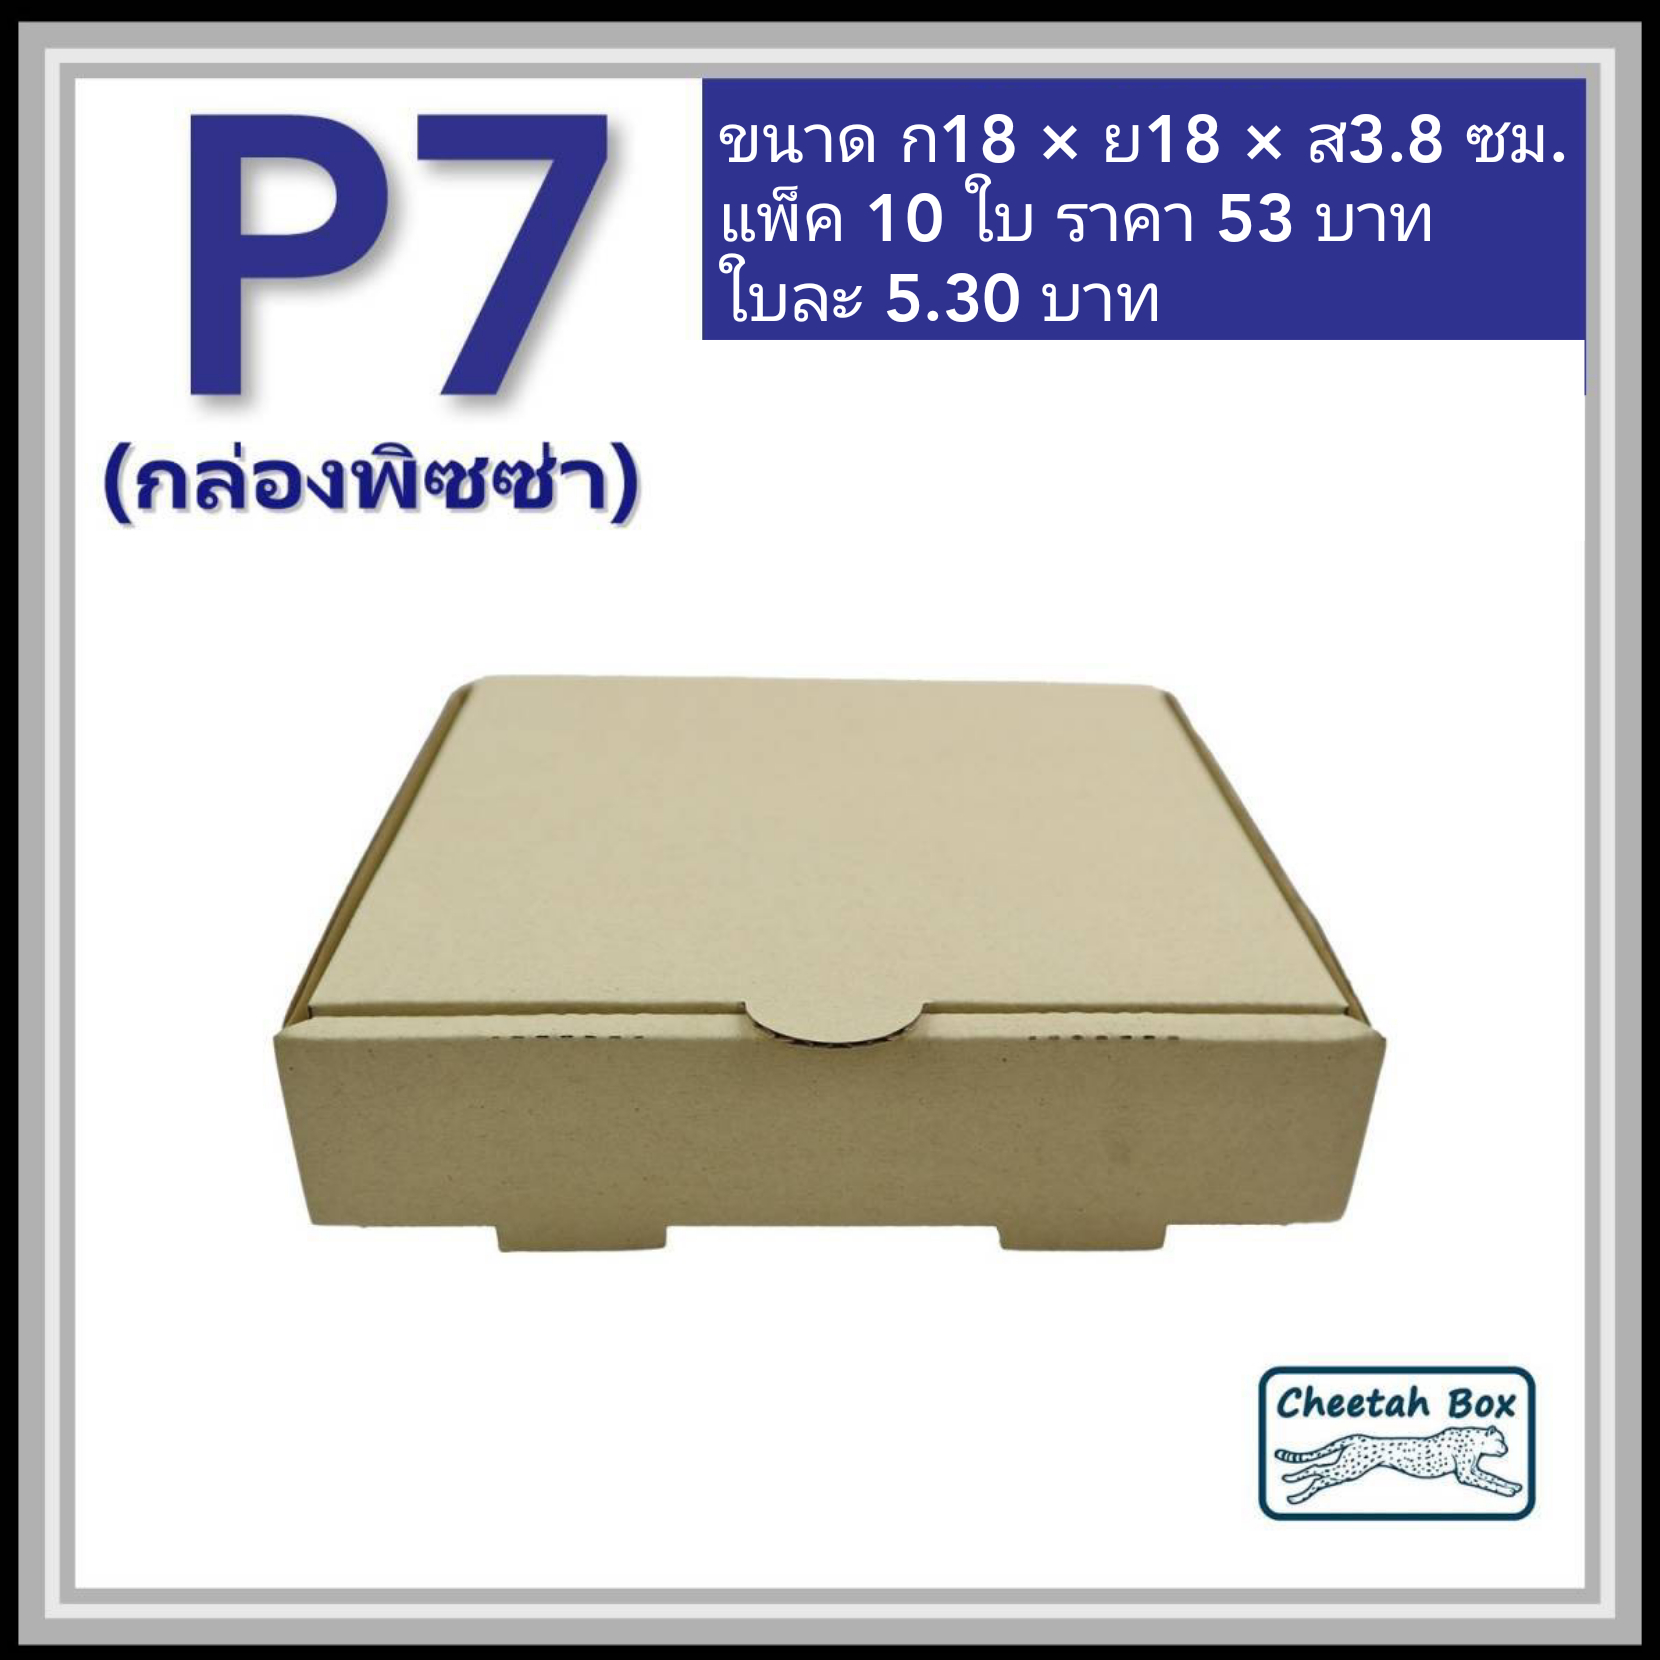 กล่องลูกฟูกใส่พิซซ่า ขนาด 7 นิ้ว (Cheetah Box ขนาด 18W*18L*3.8H CM)